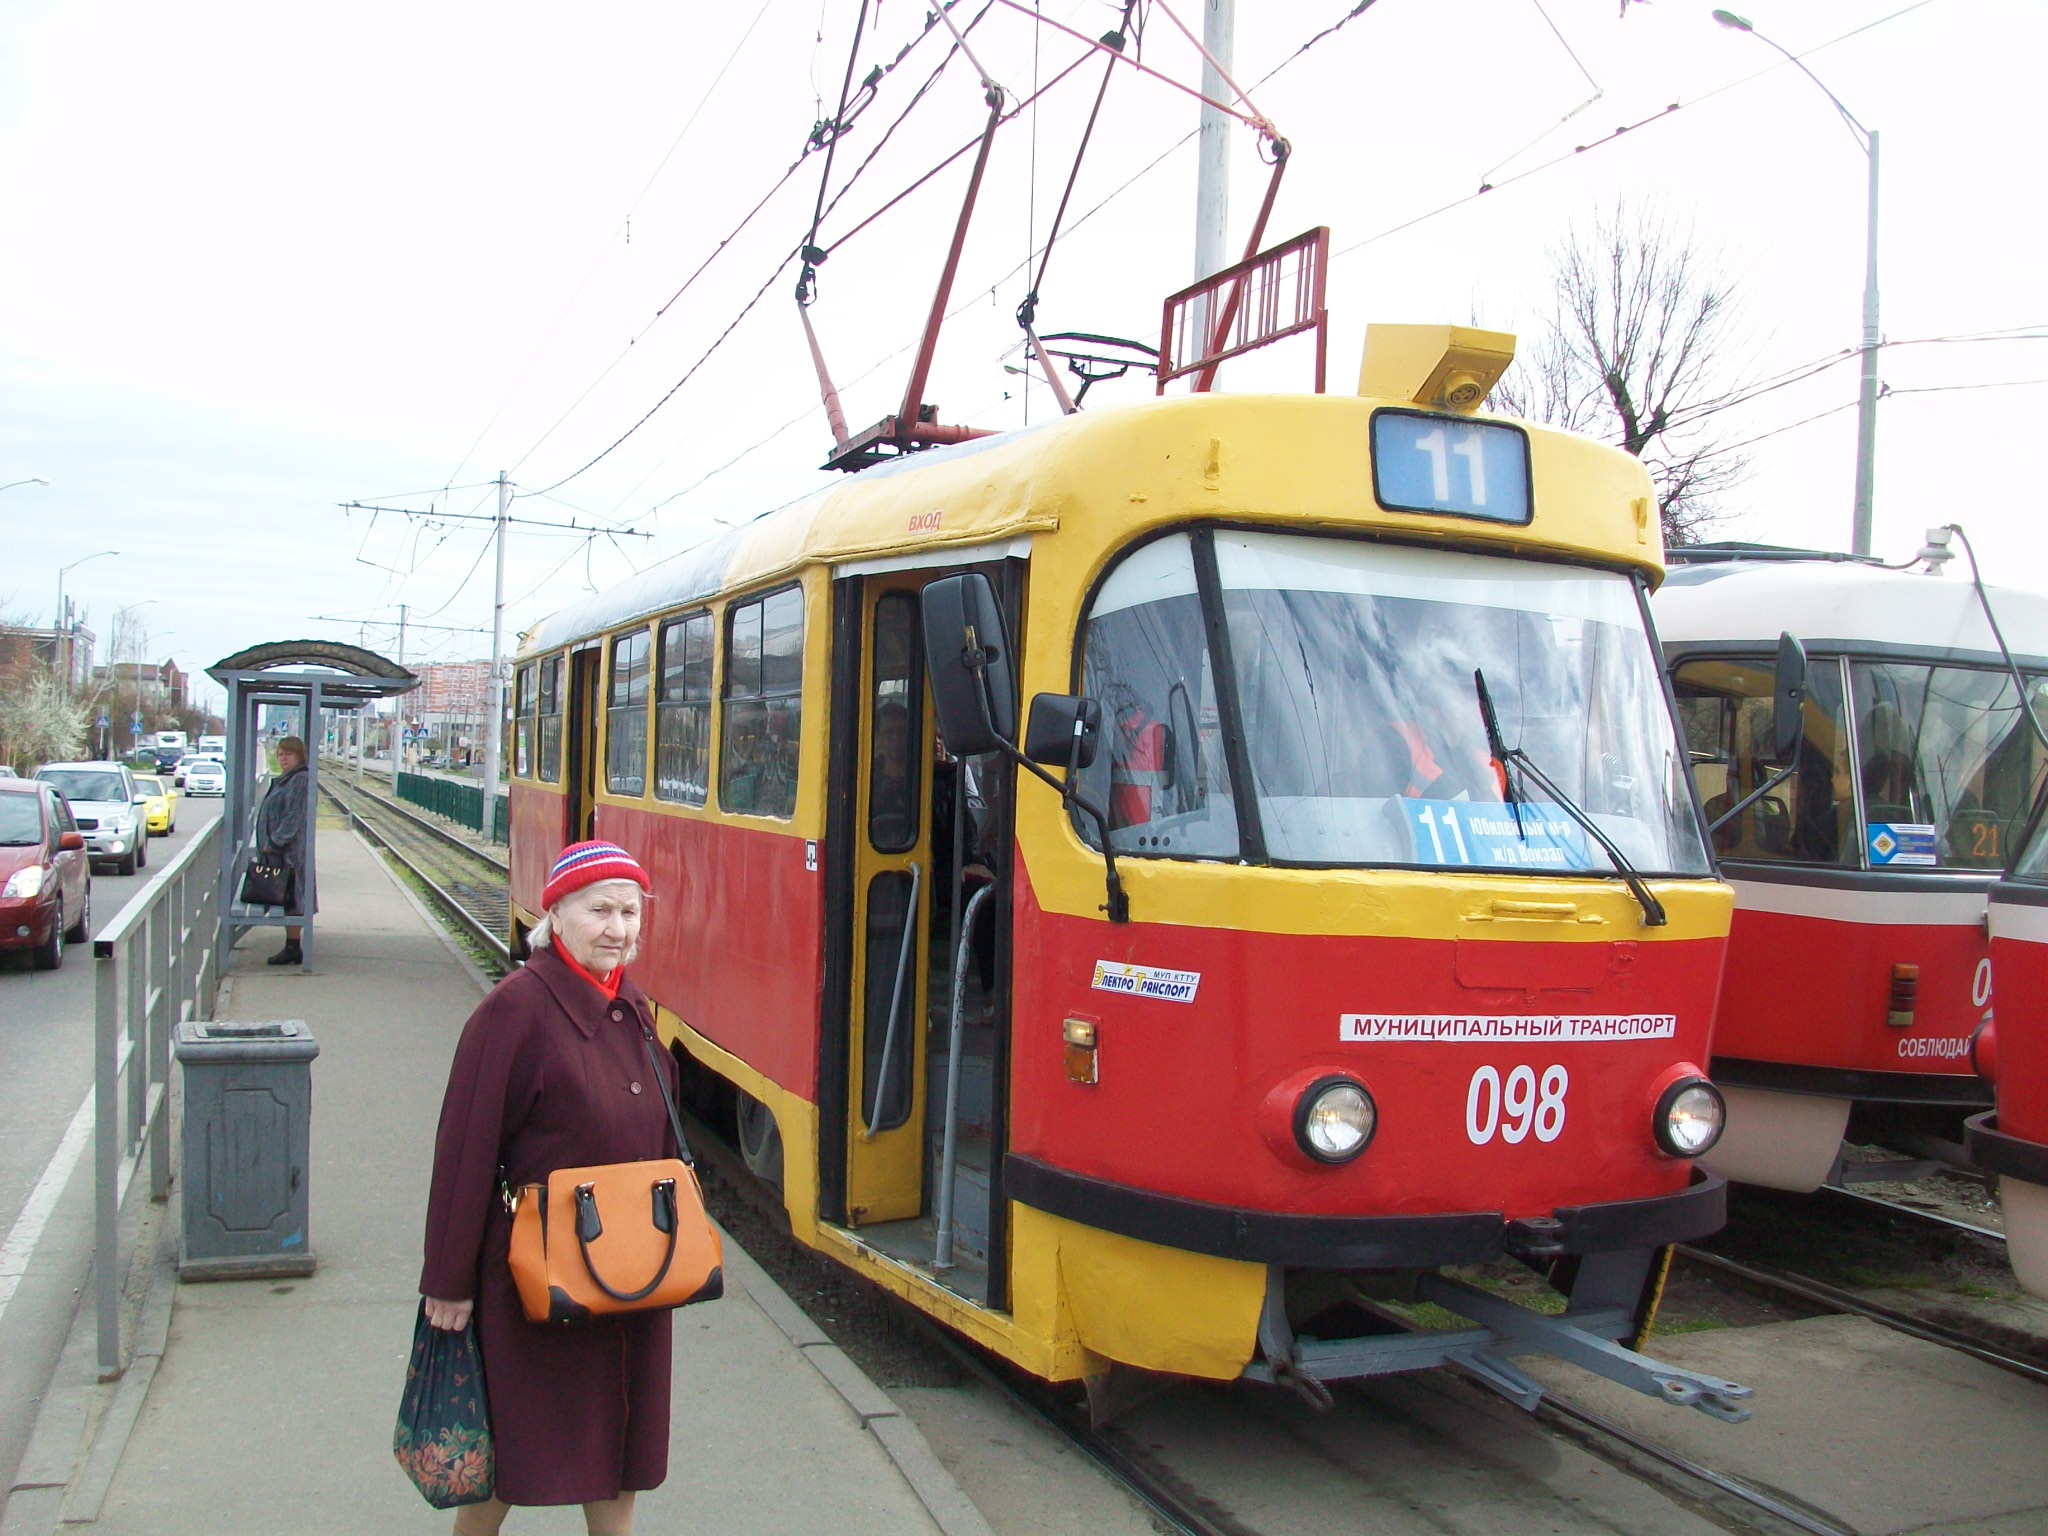 Краснодарский трамвай  —  фотографии, сделанные в 2015 году (часть 4)